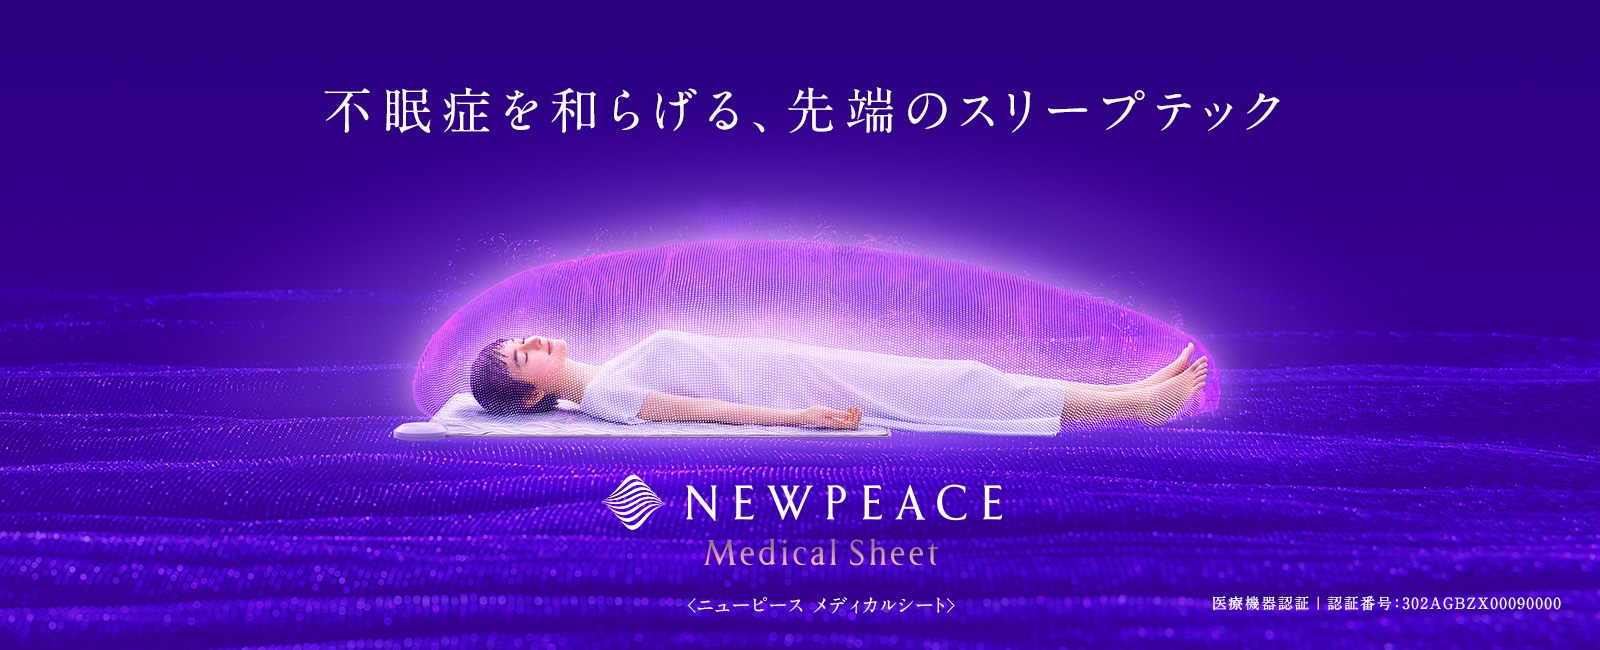 日本の、不眠に。月々600円※ではじめる不眠症対策 NEWPEACE Medical Sheet